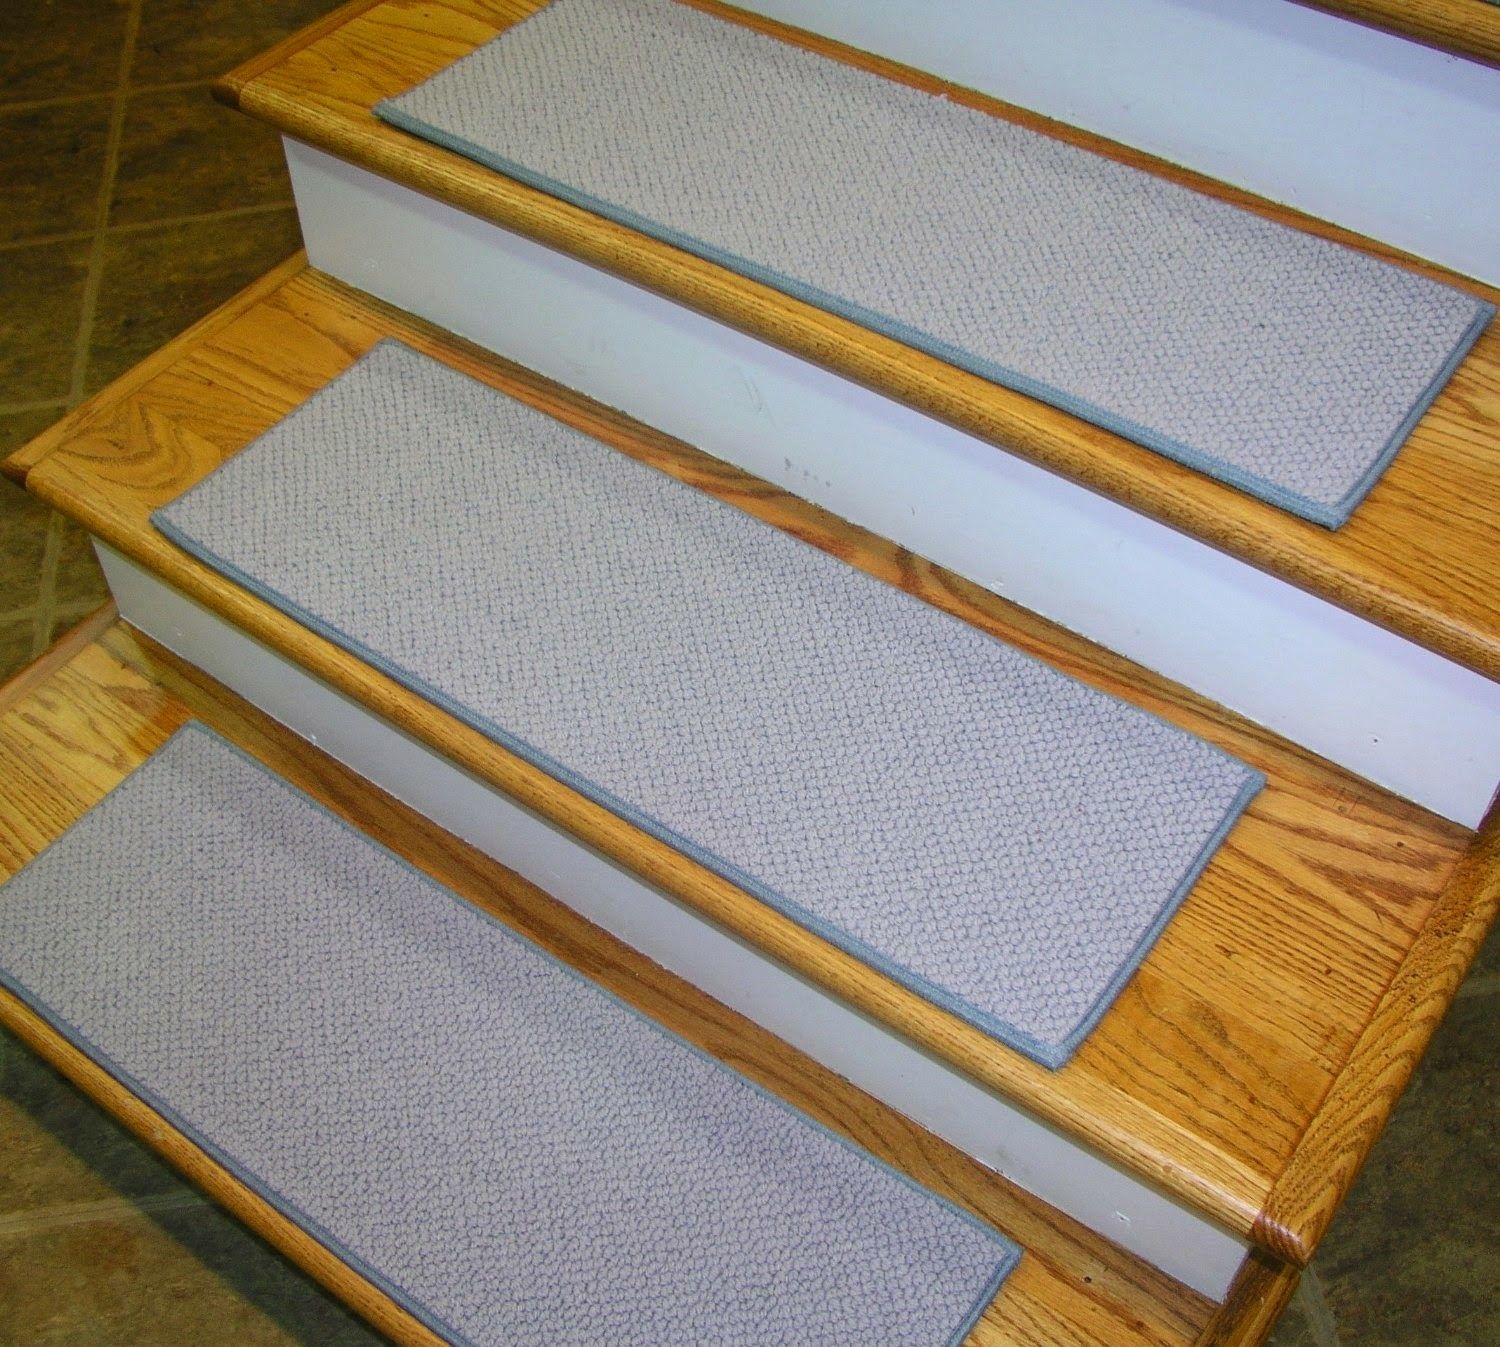 Flooring Stair Treads Carpet Stair Tread Rug Carpet Tread For With Grey Carpet Stair Treads (View 14 of 20)